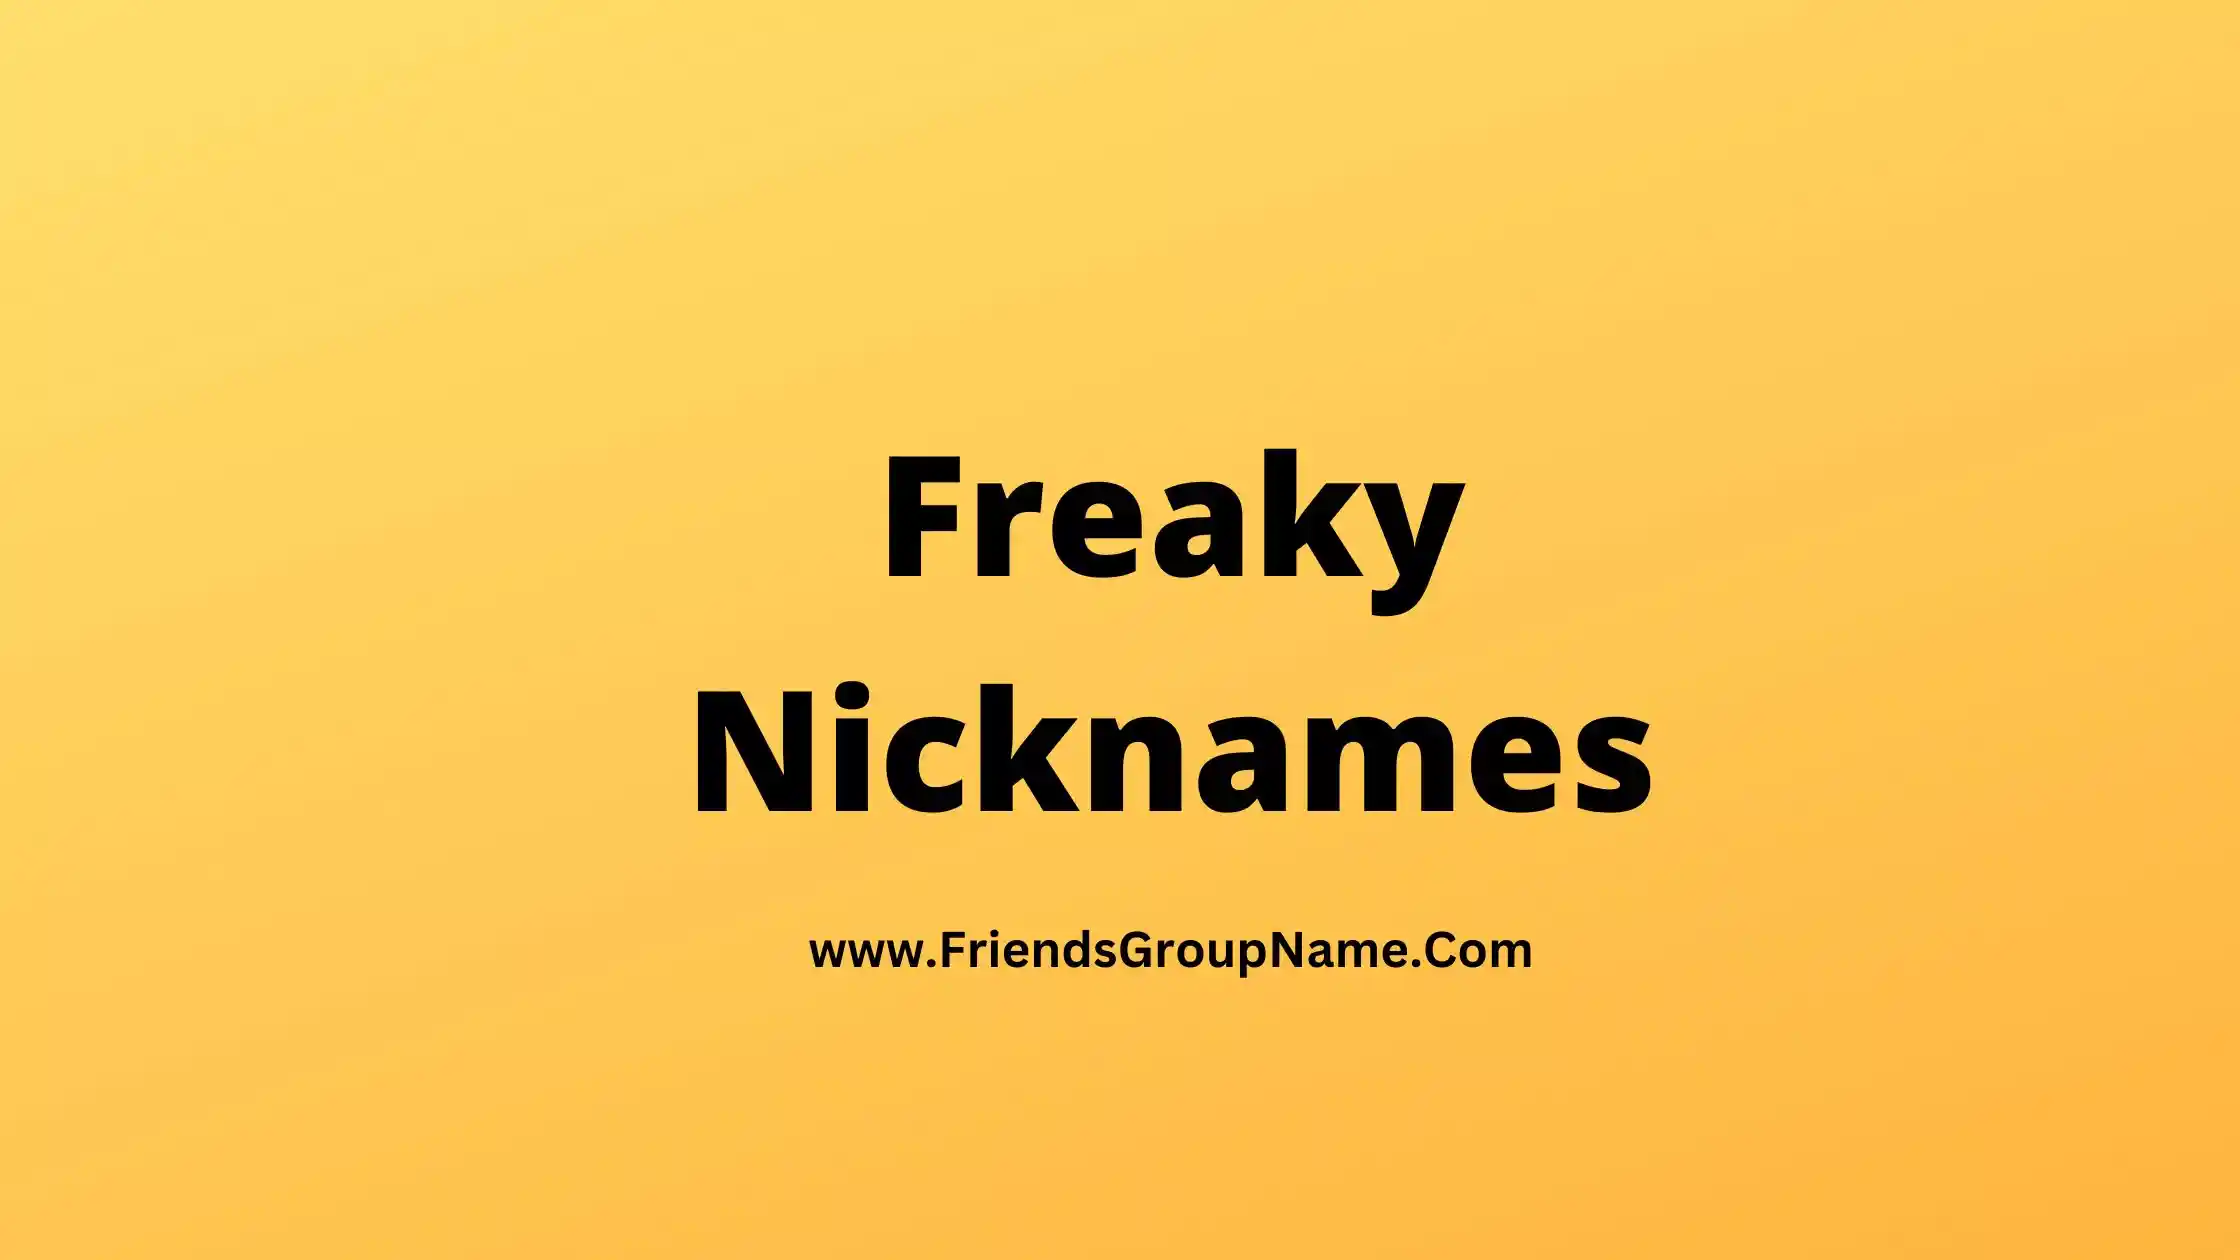 Freaky Nicknames